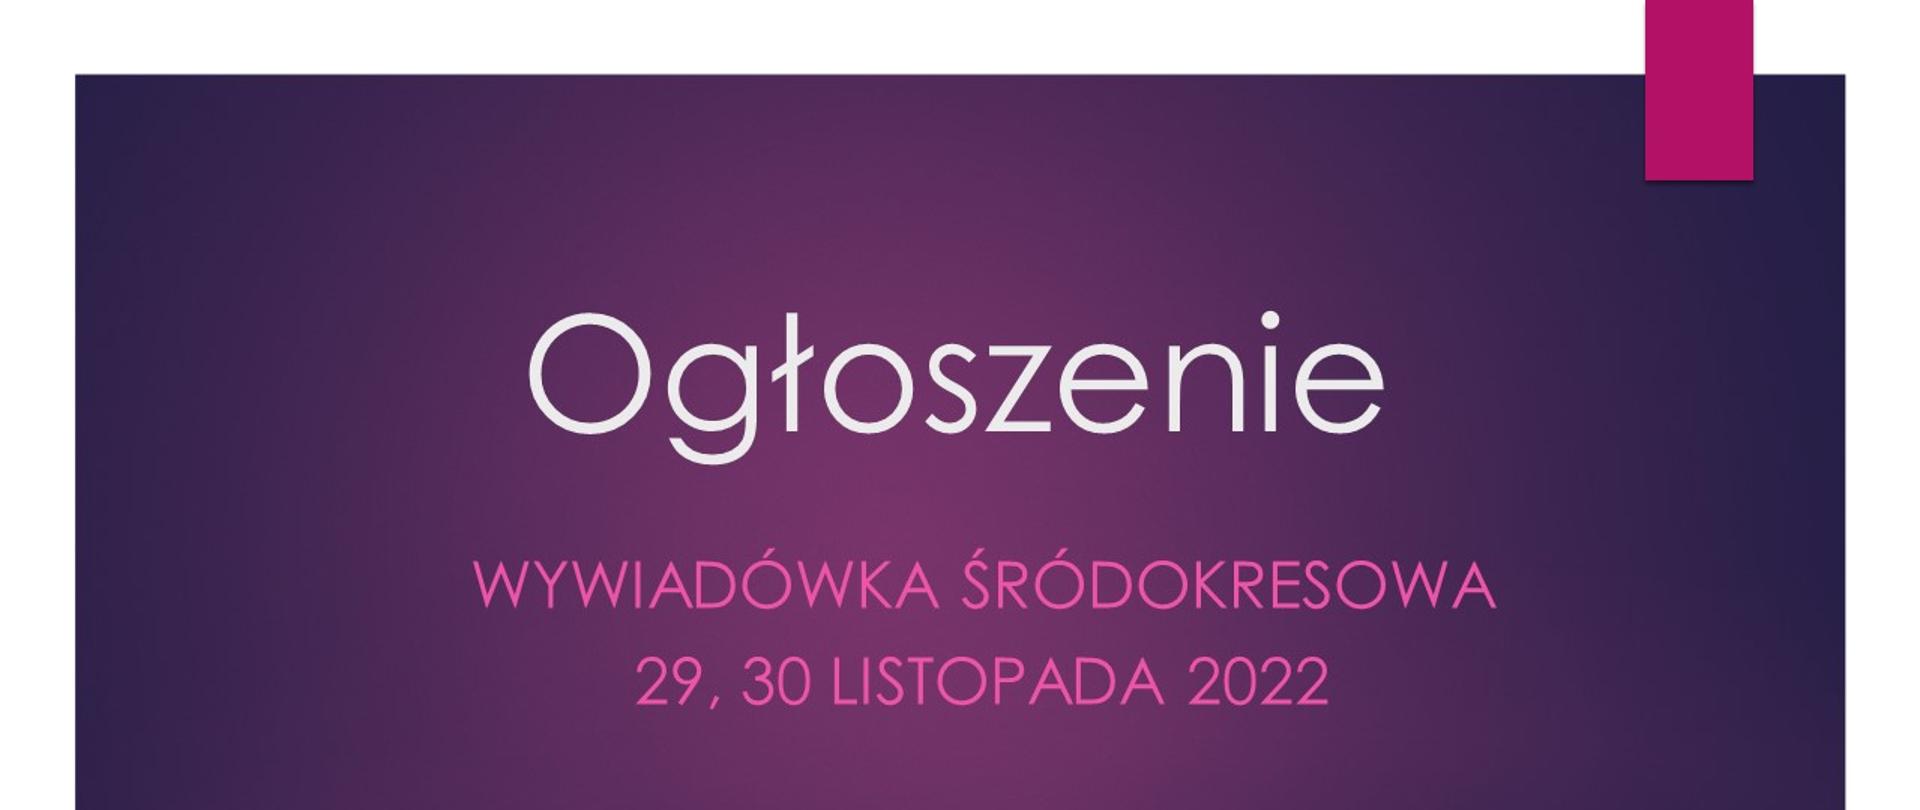 Plakat tło fioletowe z białym napisem OGŁOSZENIE i purpurowym wywiadówka śródokresowa 29, 30 listopada 2022